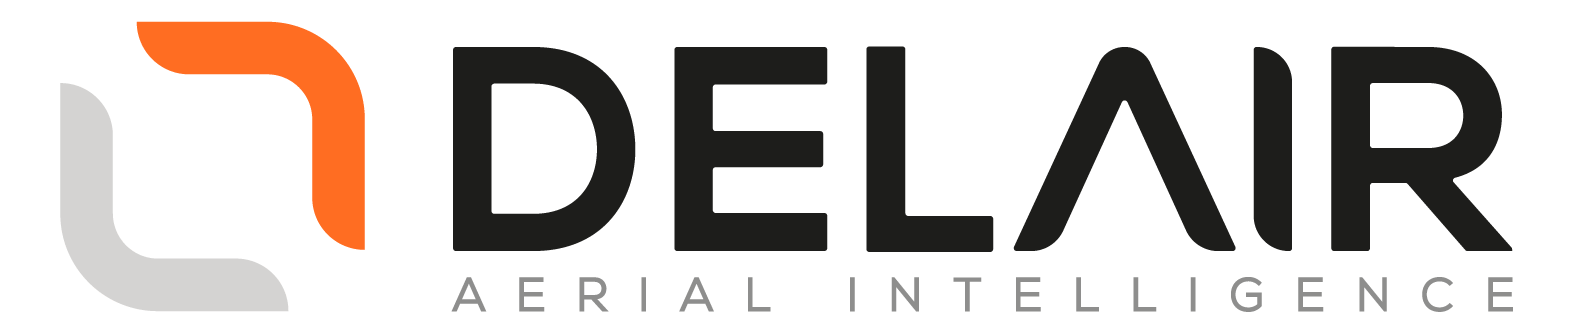 Delair_Logo_Original_Orange-Grey